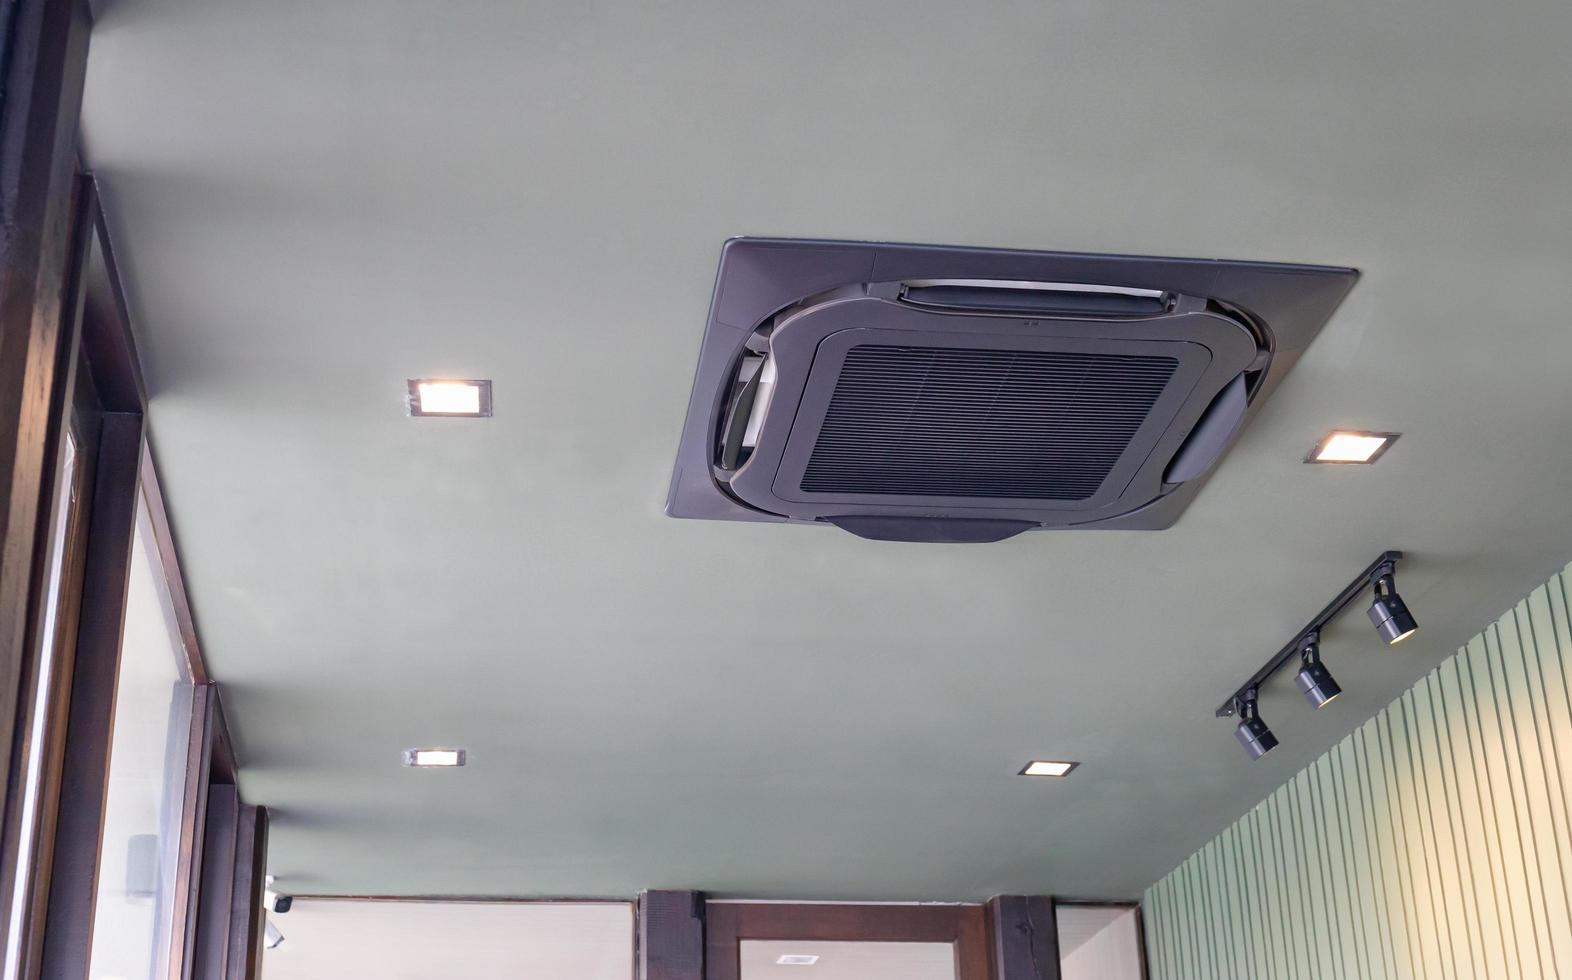 moderno sistema de aire acondicionado tipo casete montado en el techo en una cafetería foto